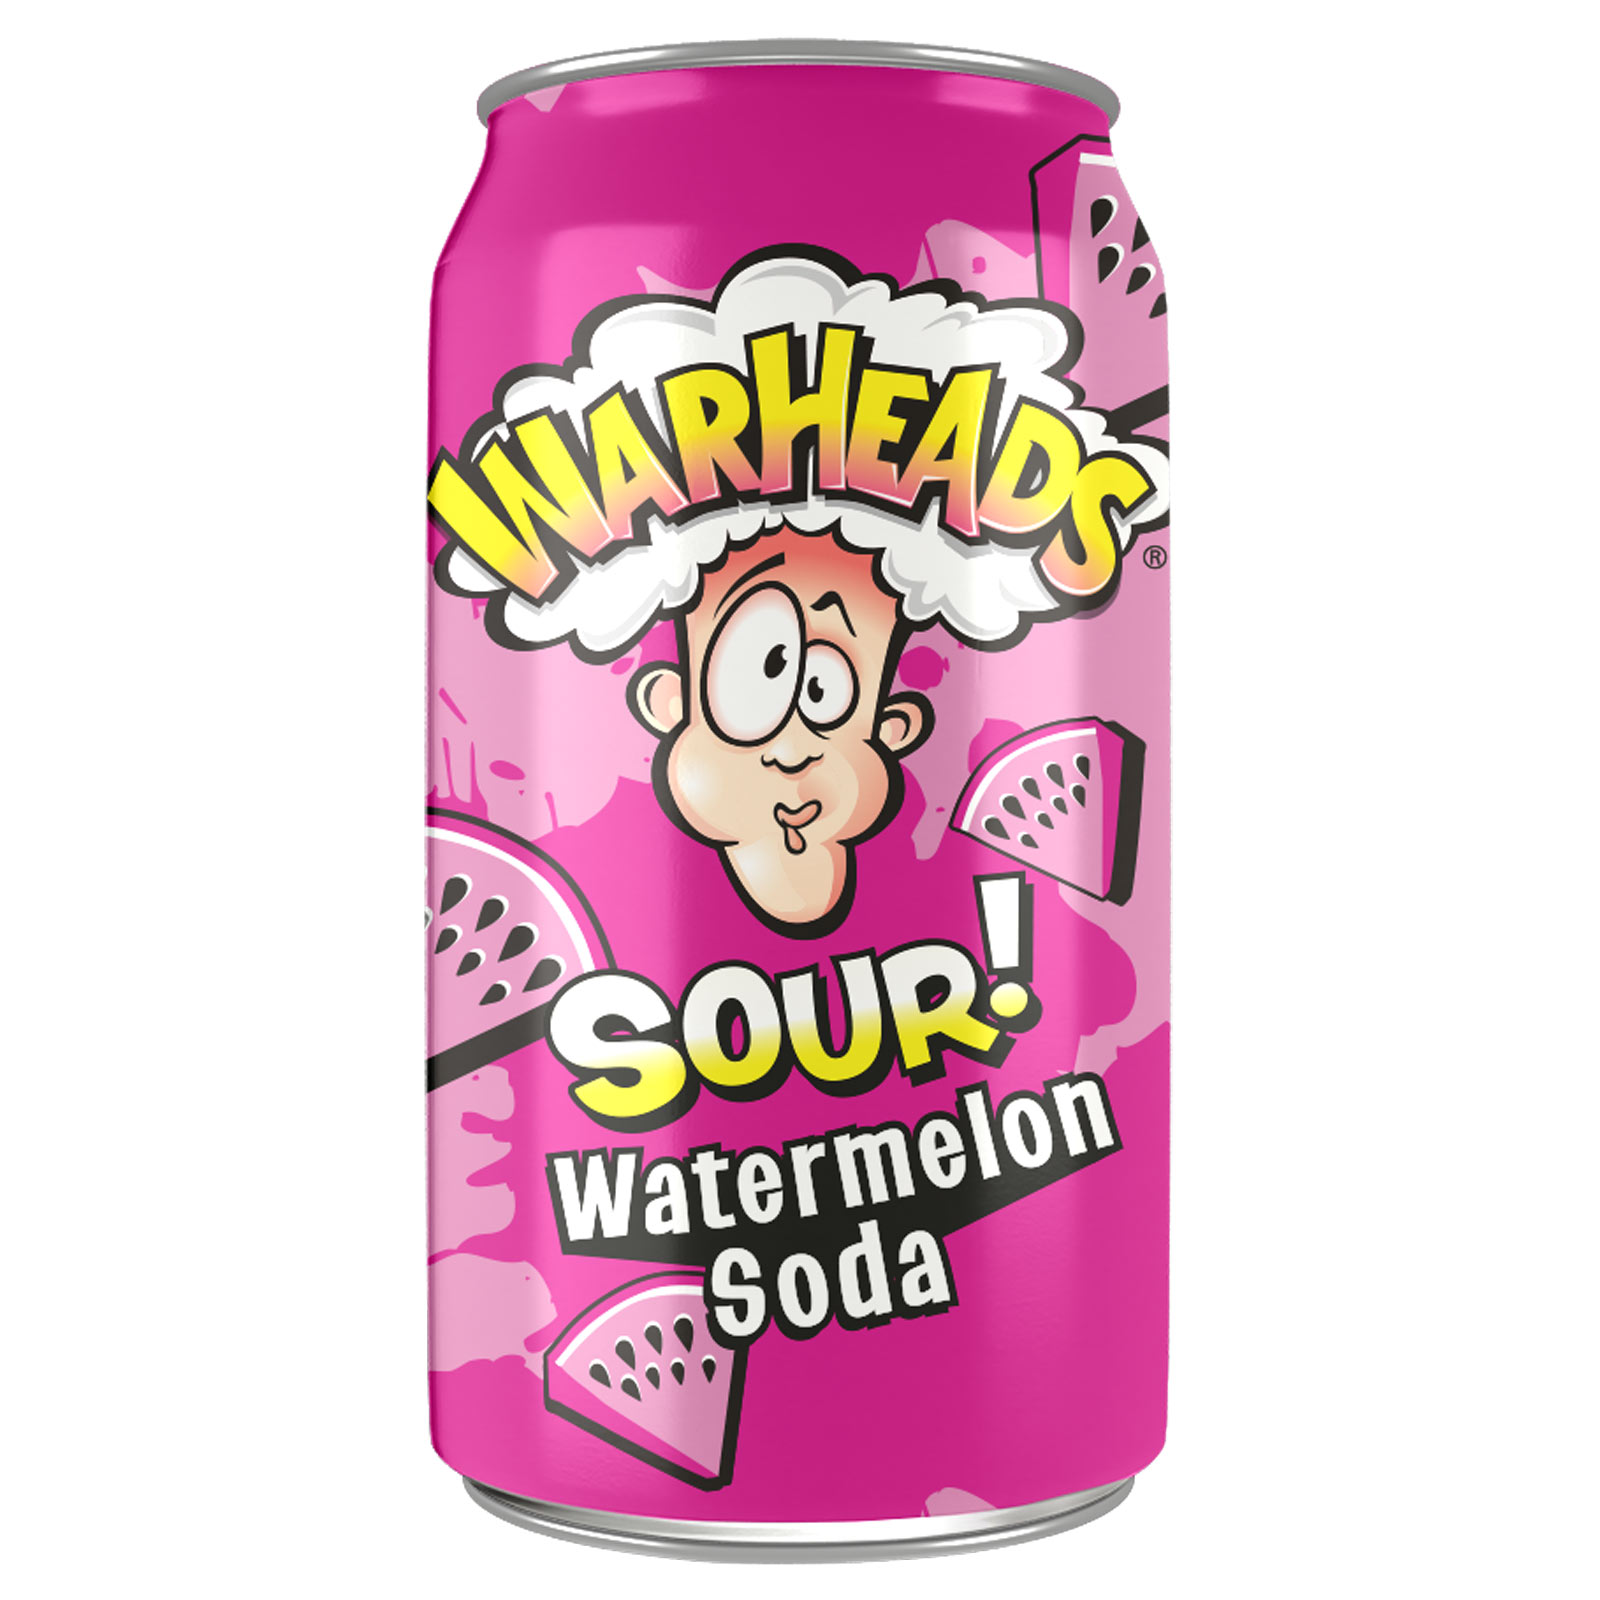 Warheads Sour Watermelon Soda Od nejoblíbenější americké značky super kyselých bonbónů přichází fantastické limonády s ovocnou příchutí s kyselým nádechem, který vás ohromí!

Kyselá limonáda Warheads s příchutí vodního  ...